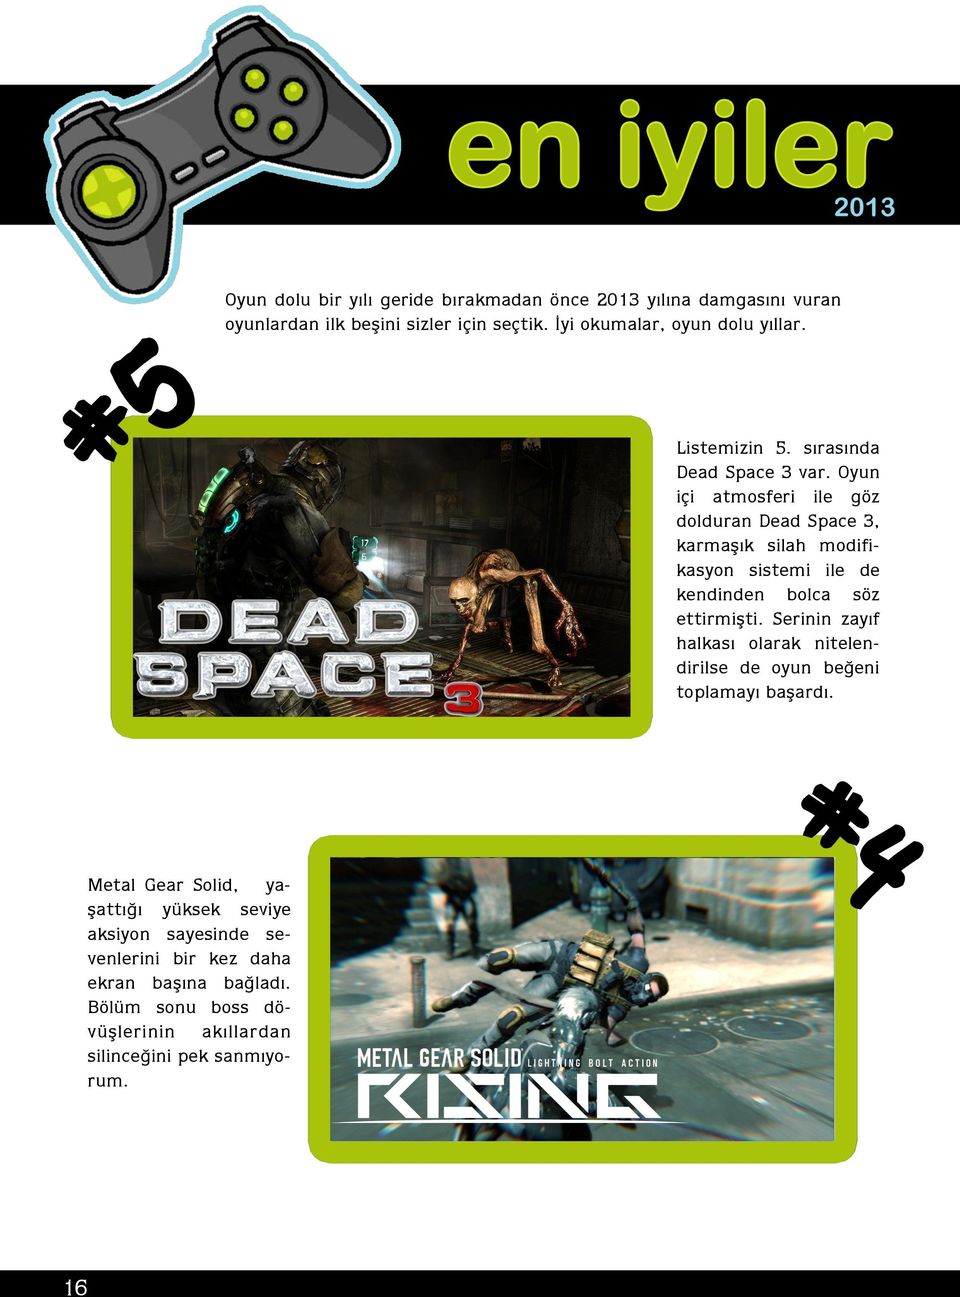 Oyun içi atmosferi ile göz dolduran Dead Space 3, karmaşık silah modifikasyon sistemi ile de kendinden bolca söz ettirmişti.